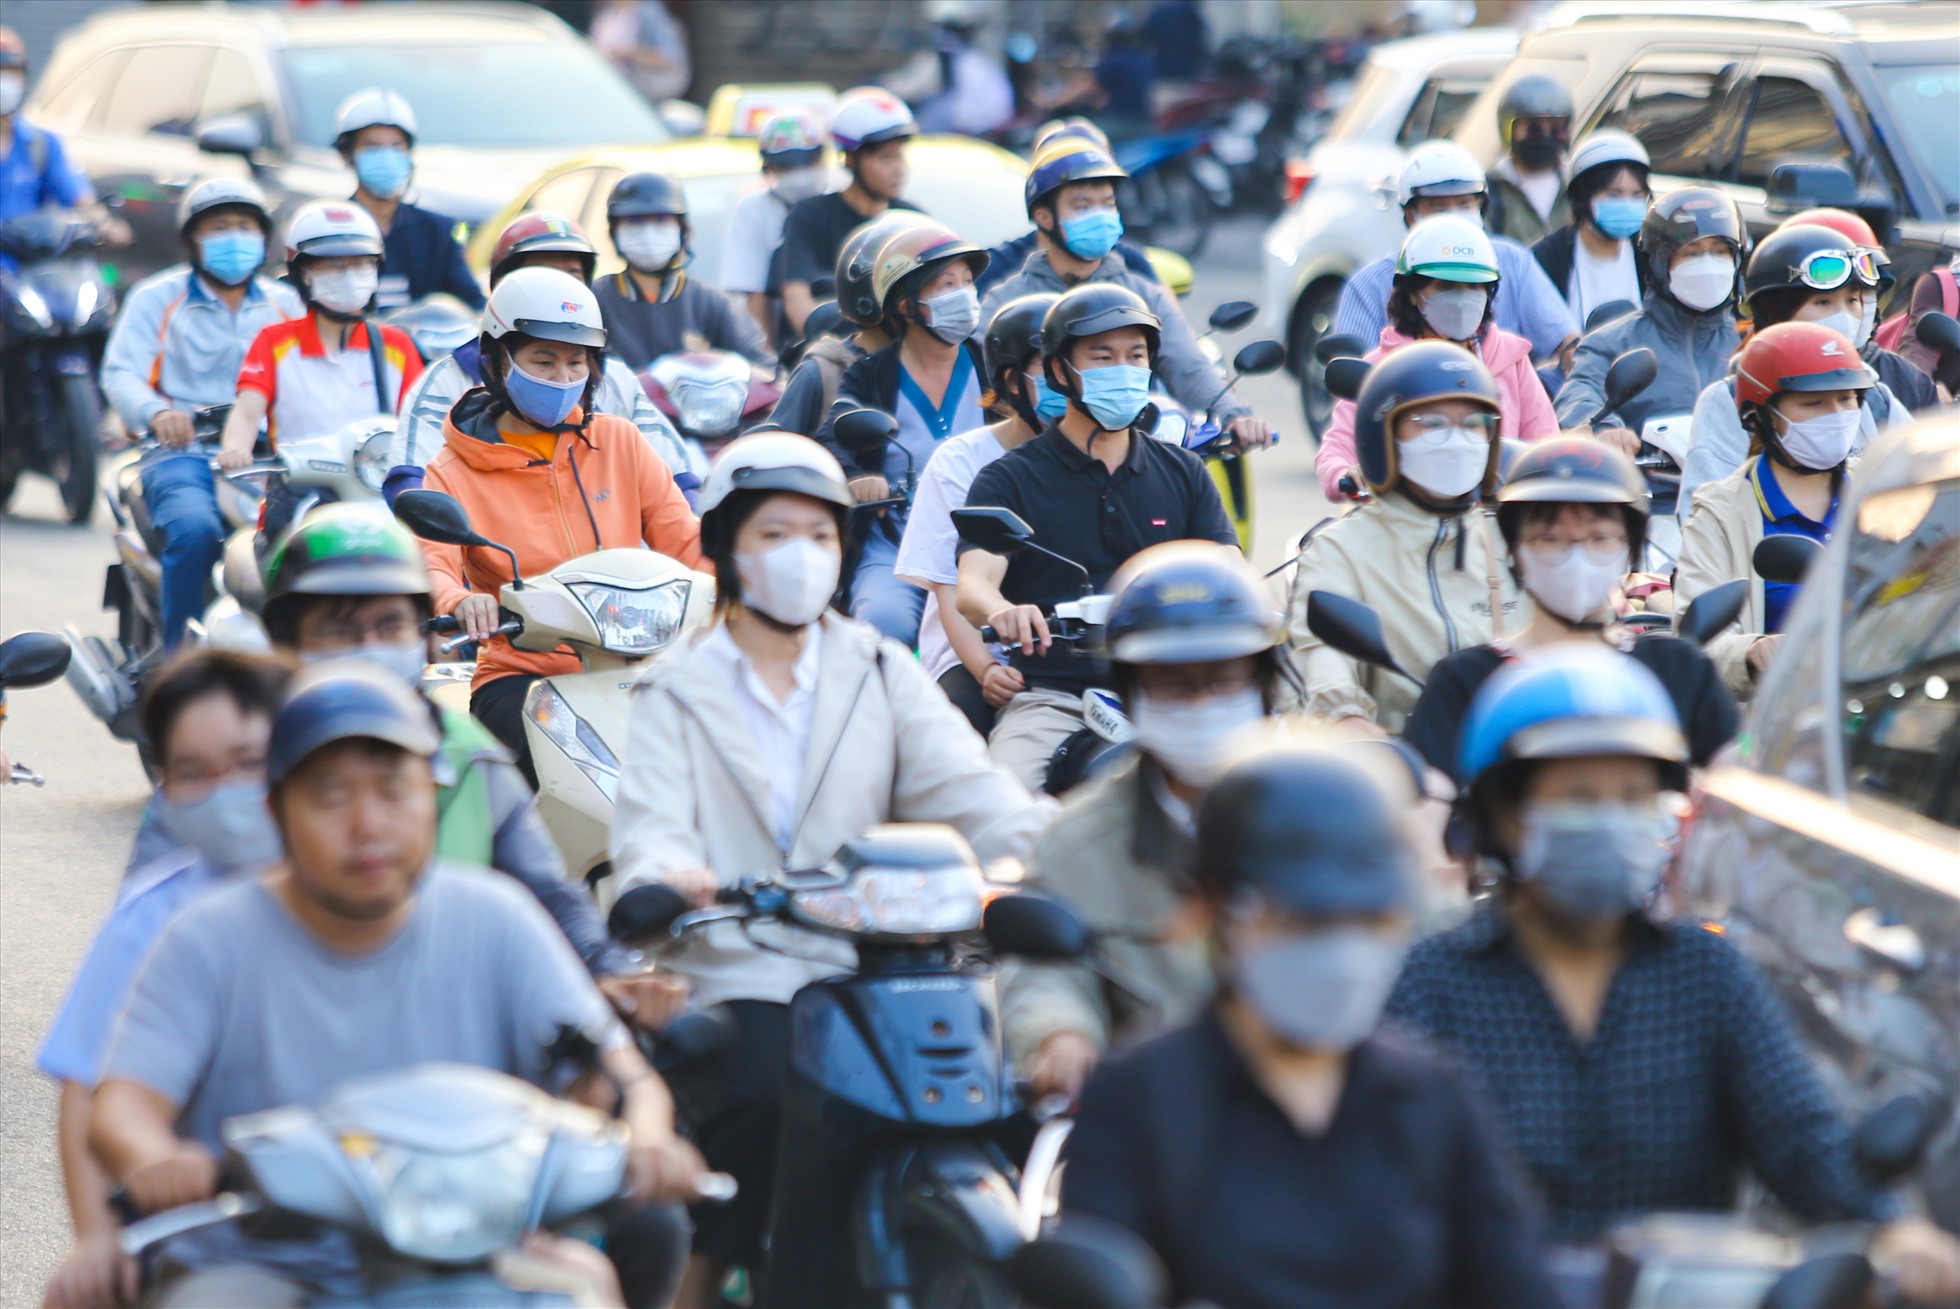 Theo ghi nhận của Lao Động, vào giờ cao điểm từ 16h30 đến hơn 18h, dòng xe từ đường Đinh Tiên Hoàng (Quận 1) đổ về vòng xoay qua đường Nguyễn Bỉnh Khiêm, Điện Biên Phủ (quận Bình Thạnh) luôn trong tình trạng dày đặc phương tiện.